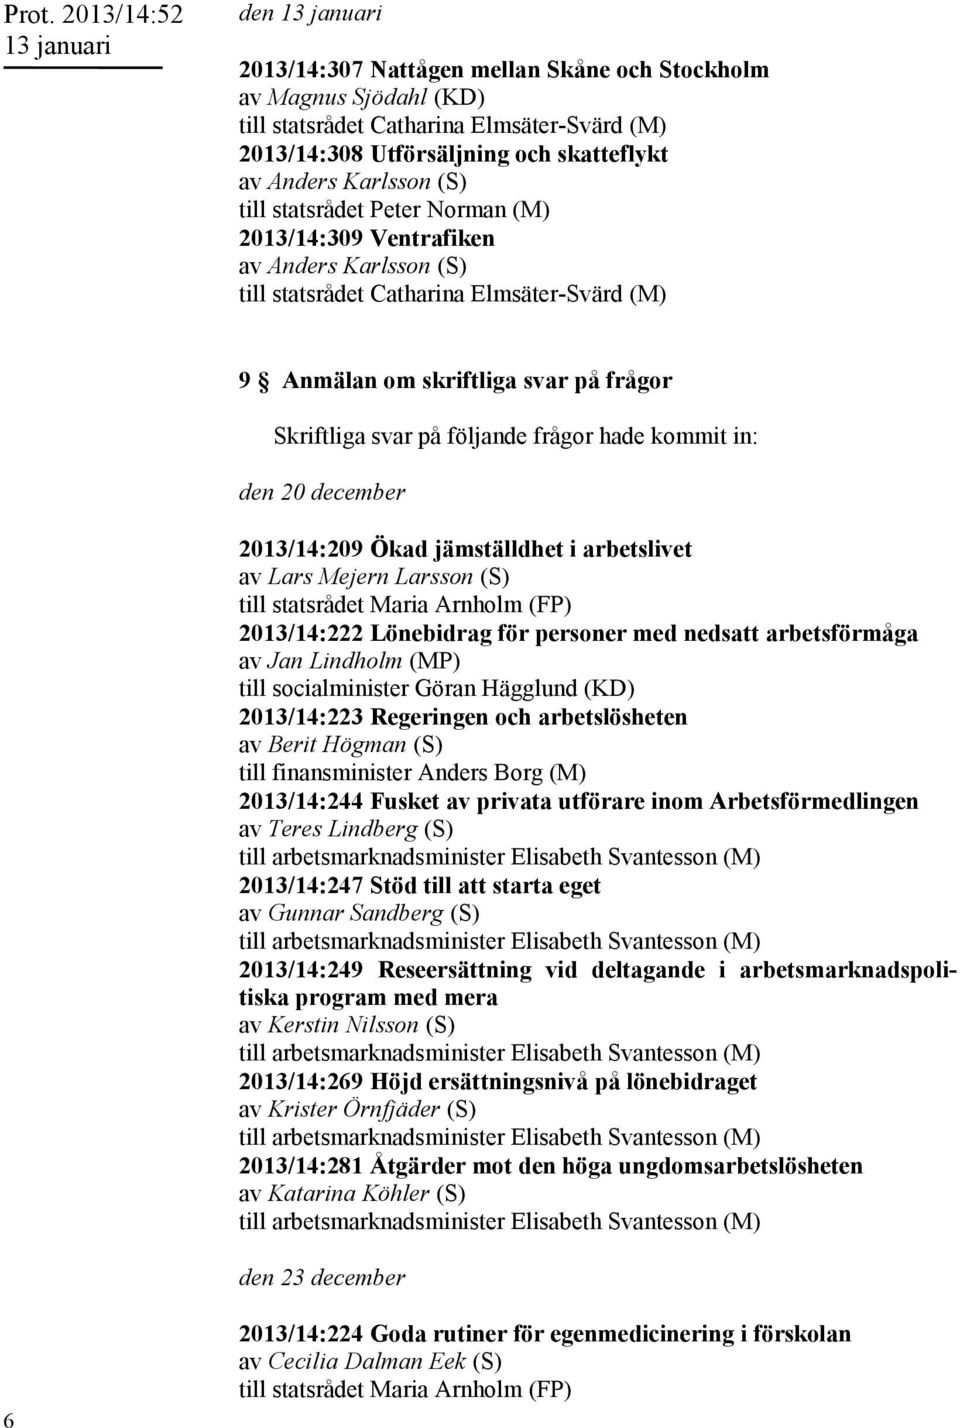 Arnholm (FP) 2013/14:222 Lönebidrag för personer med nedsatt arbetsförmåga av Jan Lindholm (MP) till socialminister Göran Hägglund (KD) 2013/14:223 Regeringen och arbetslösheten av Berit Högman (S)